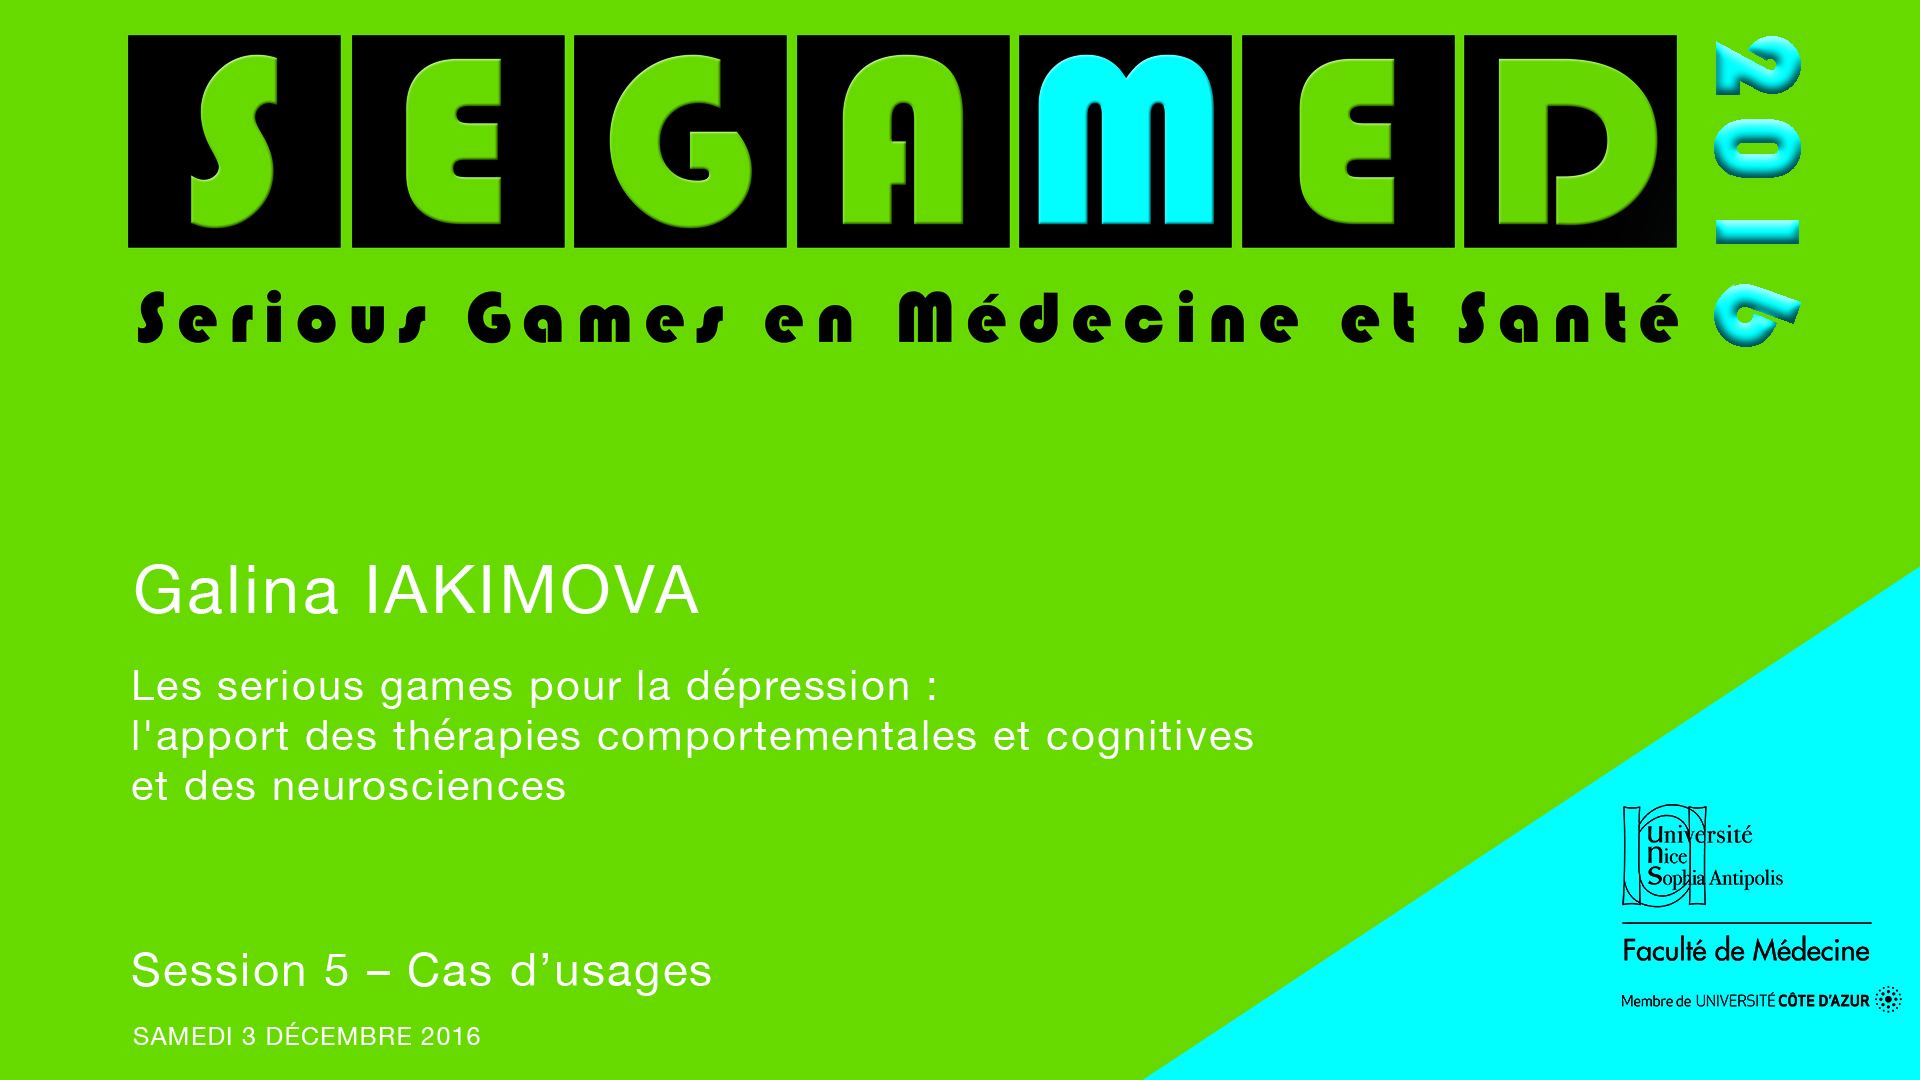 SEGAMED 2016 - Les serious games pour la dépression